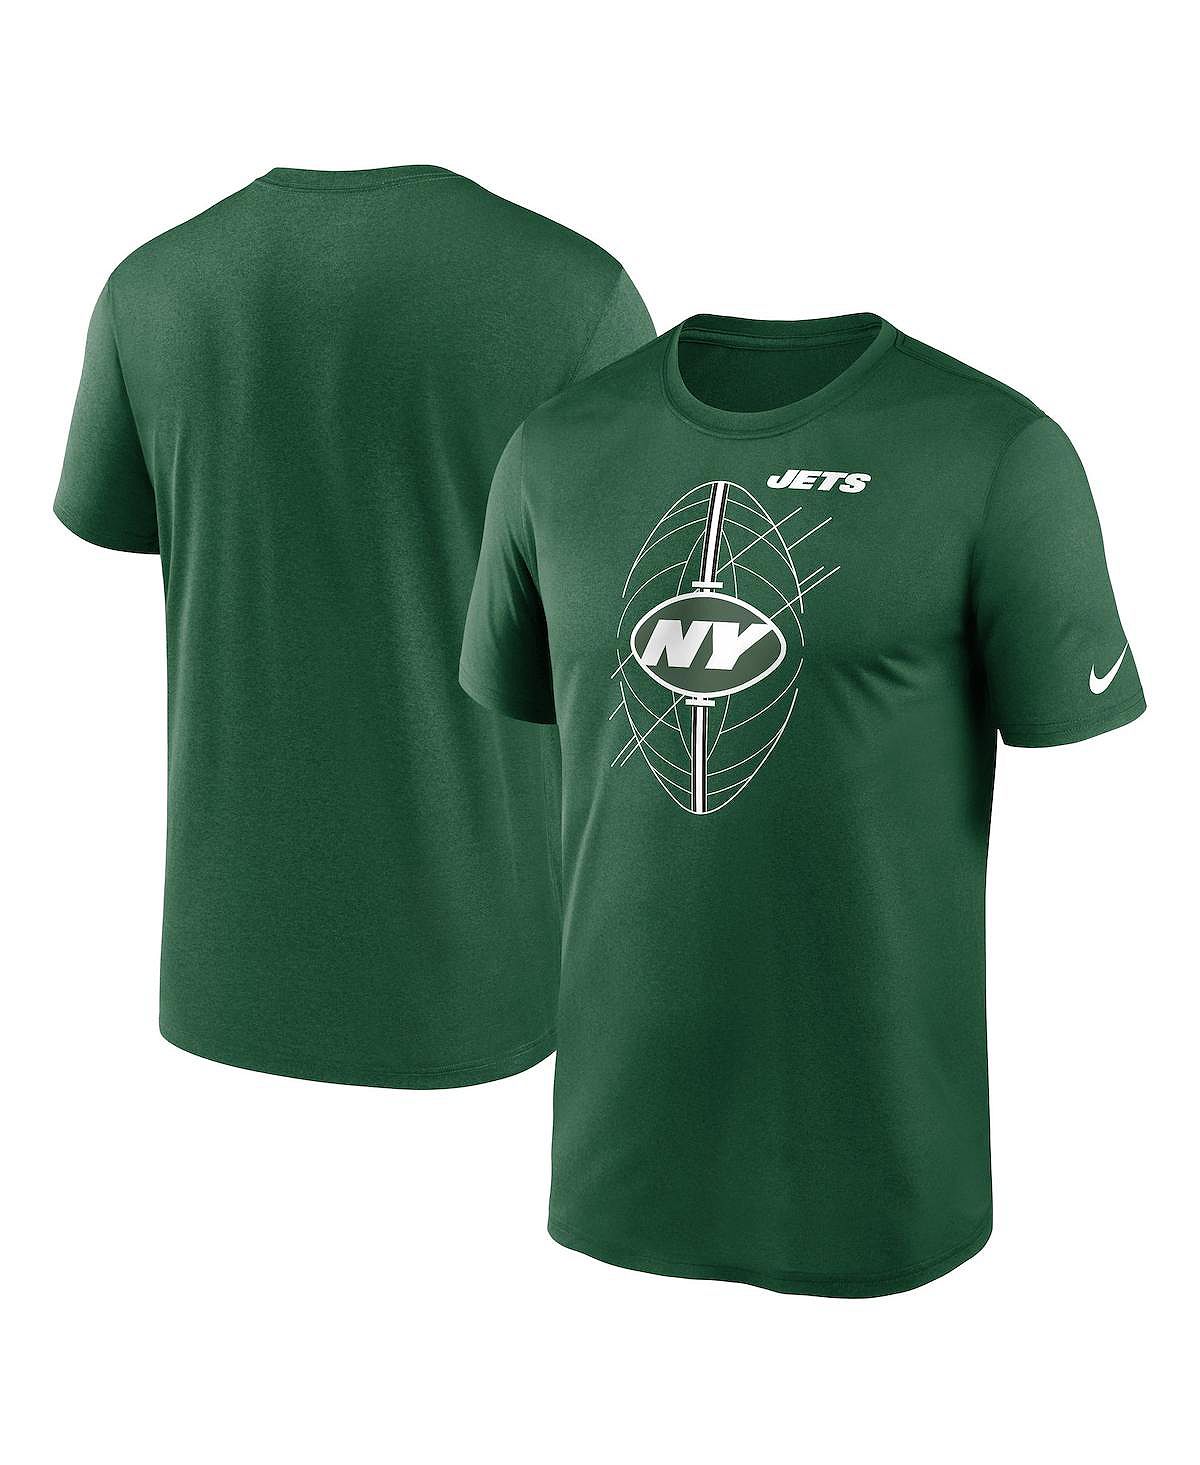 Мужская зеленая футболка New York Jets Legend Icon Performance Nike мужская зеленая футболка new york jets legend icon performance nike